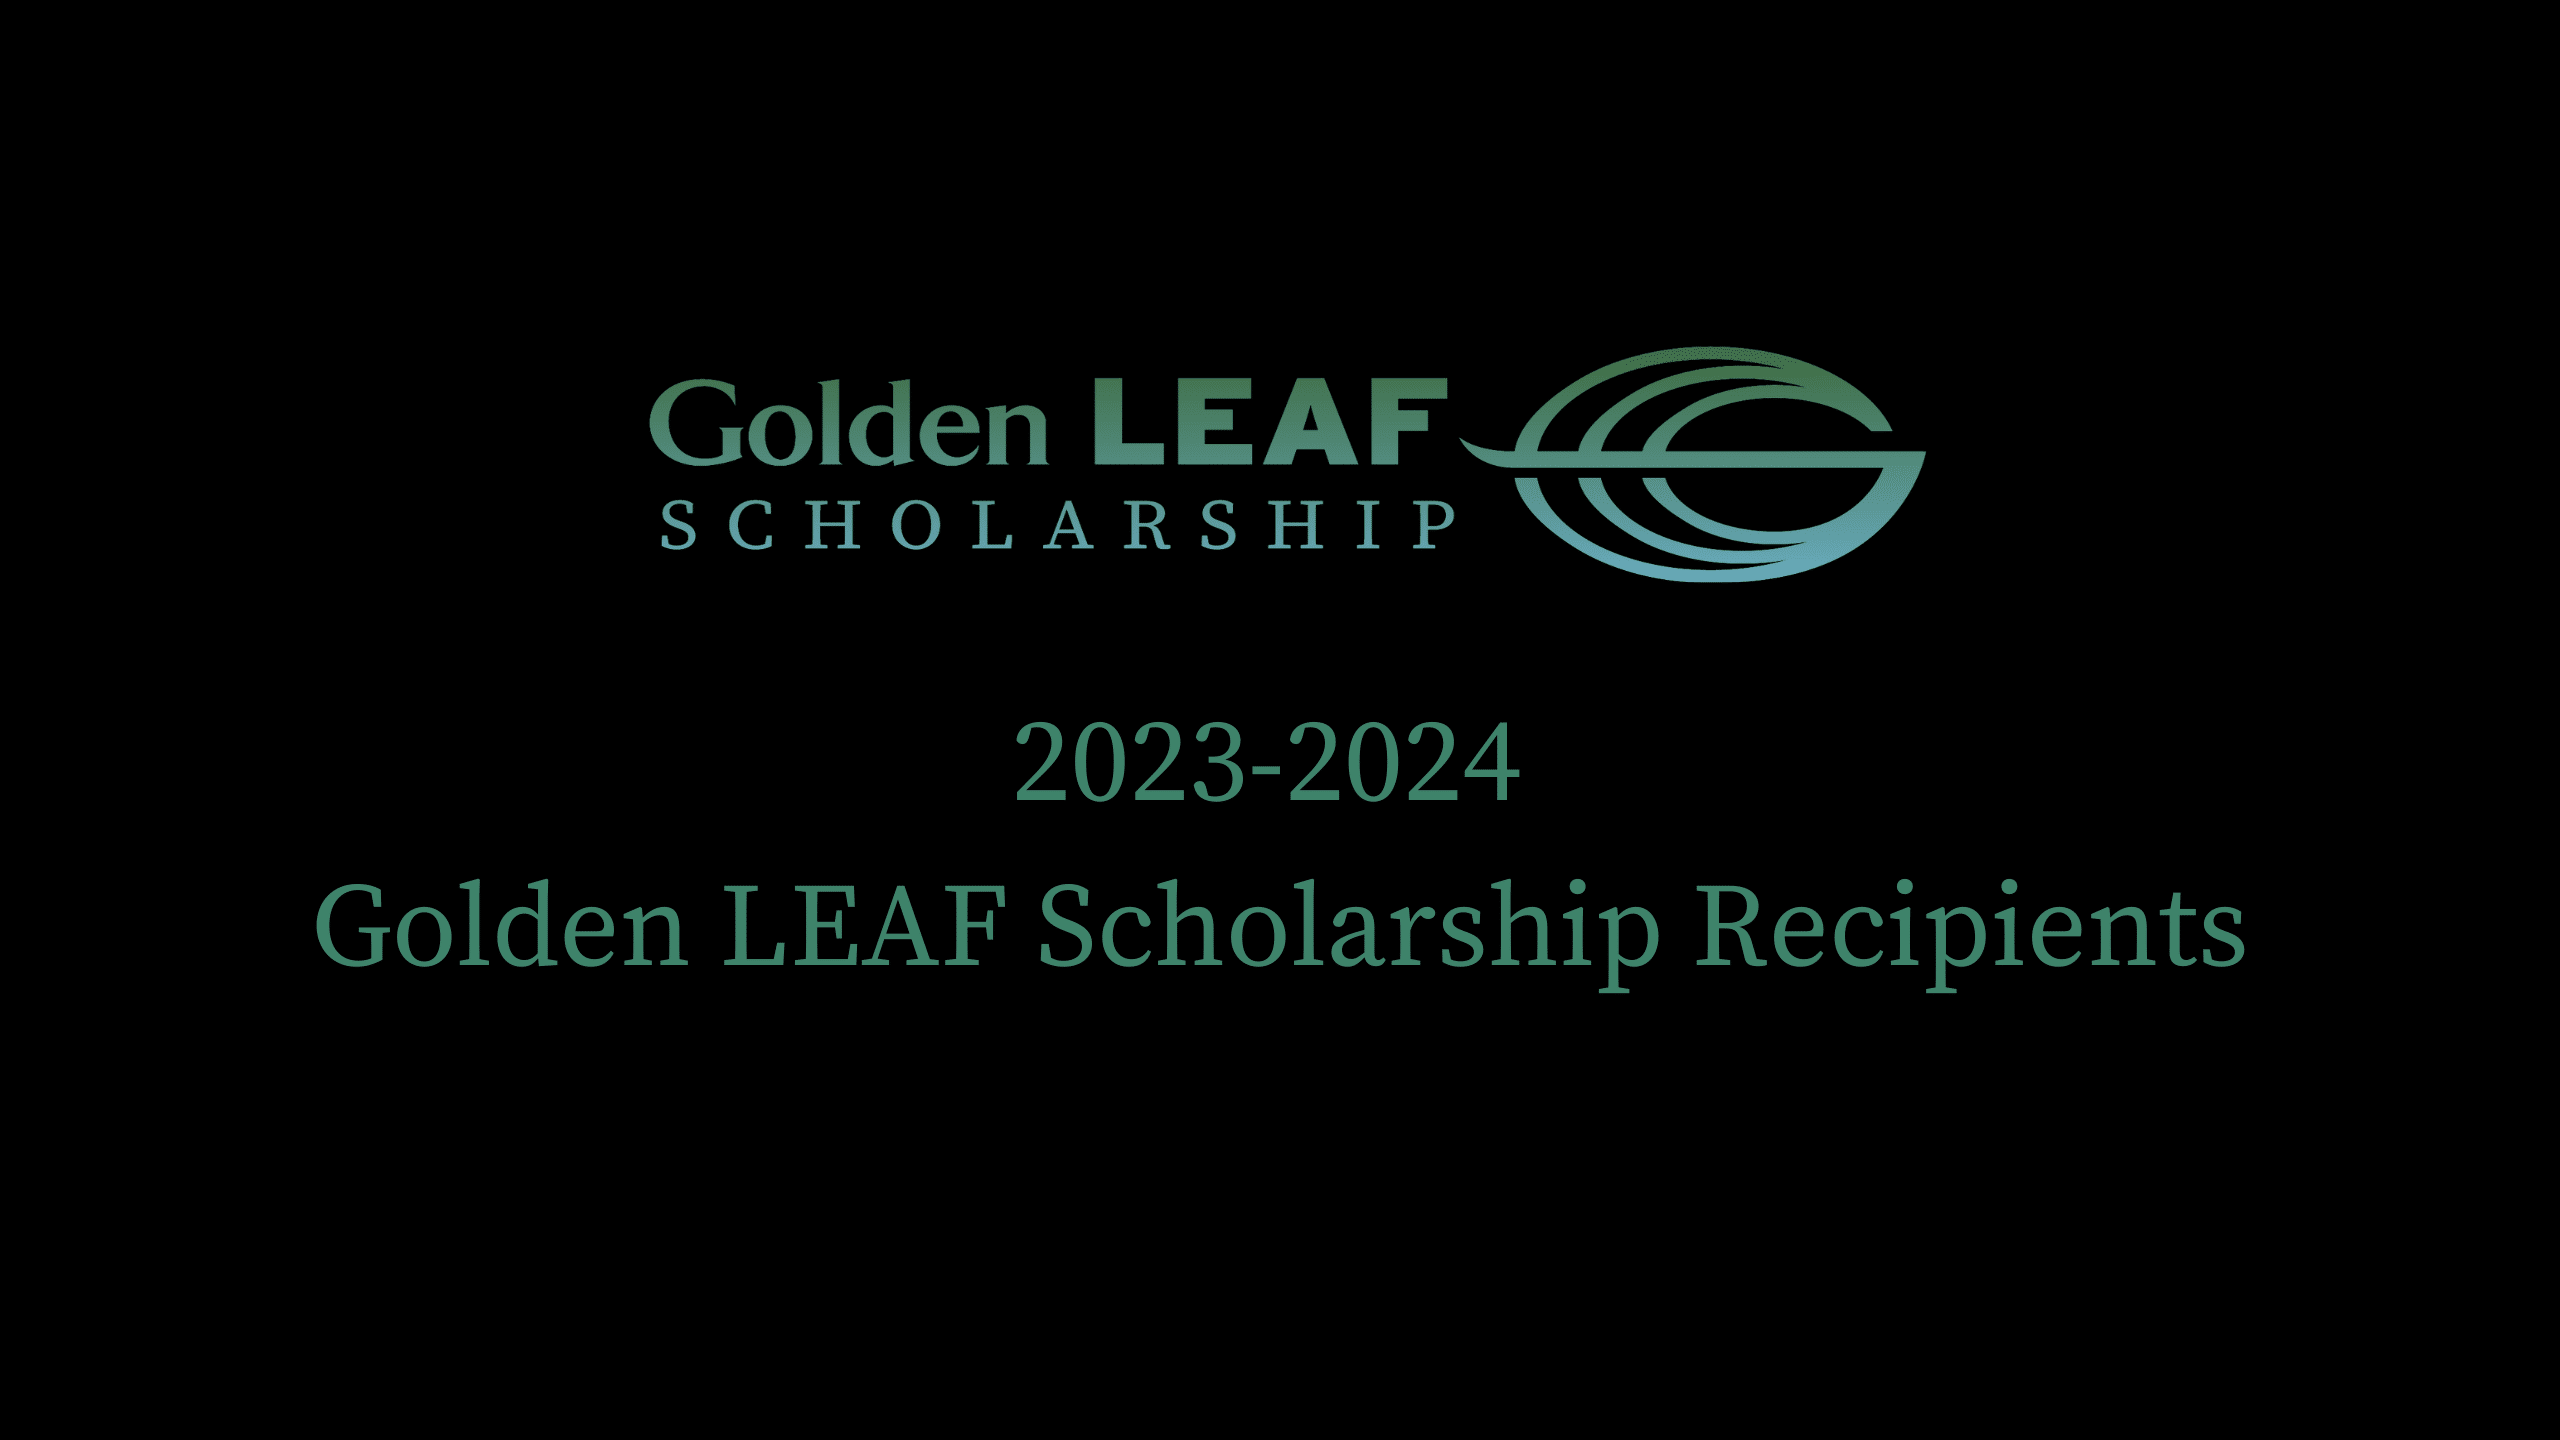 Golden LEAF Announces 2023-2024 Golden LEAF Scholarship Recipients